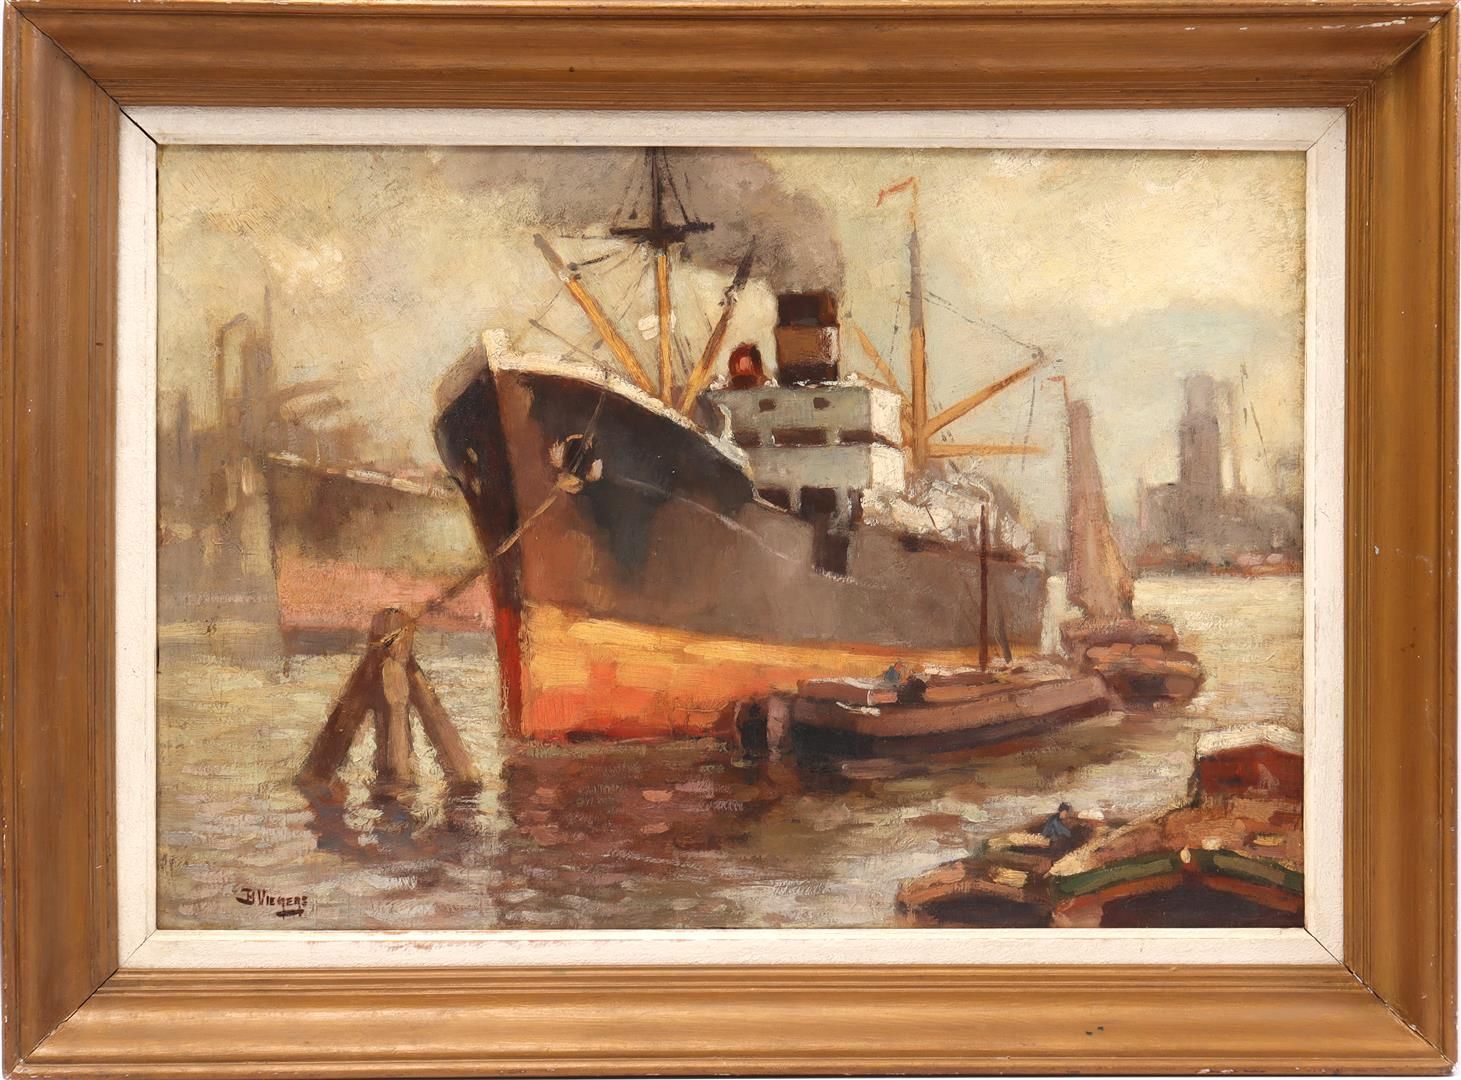 Ben Viegers Ben Viegers (1886-1947)

Navires dans le port, panneau 51x74 cm